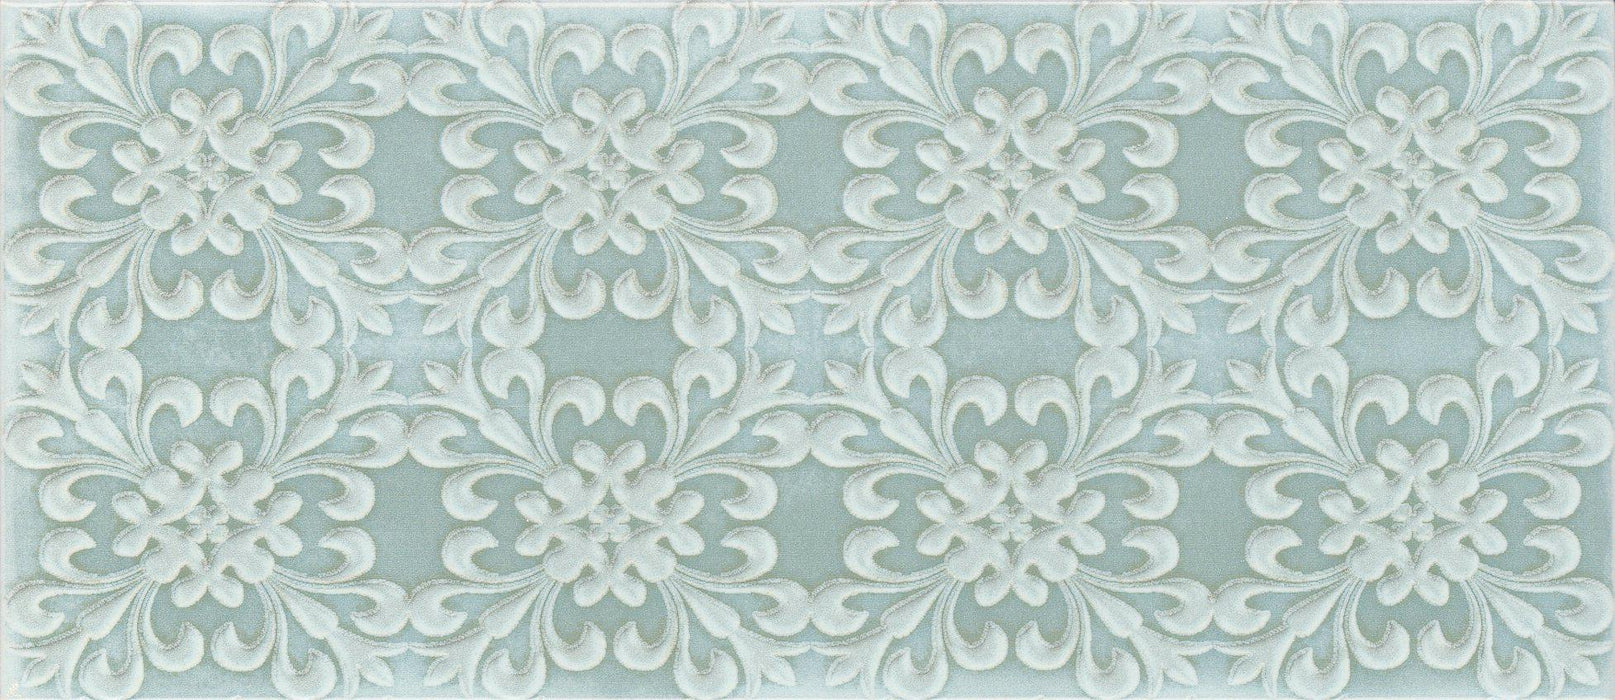 Maiolica Chantilly Venise Aqua Glossy 4x10 Ceramic  Tile